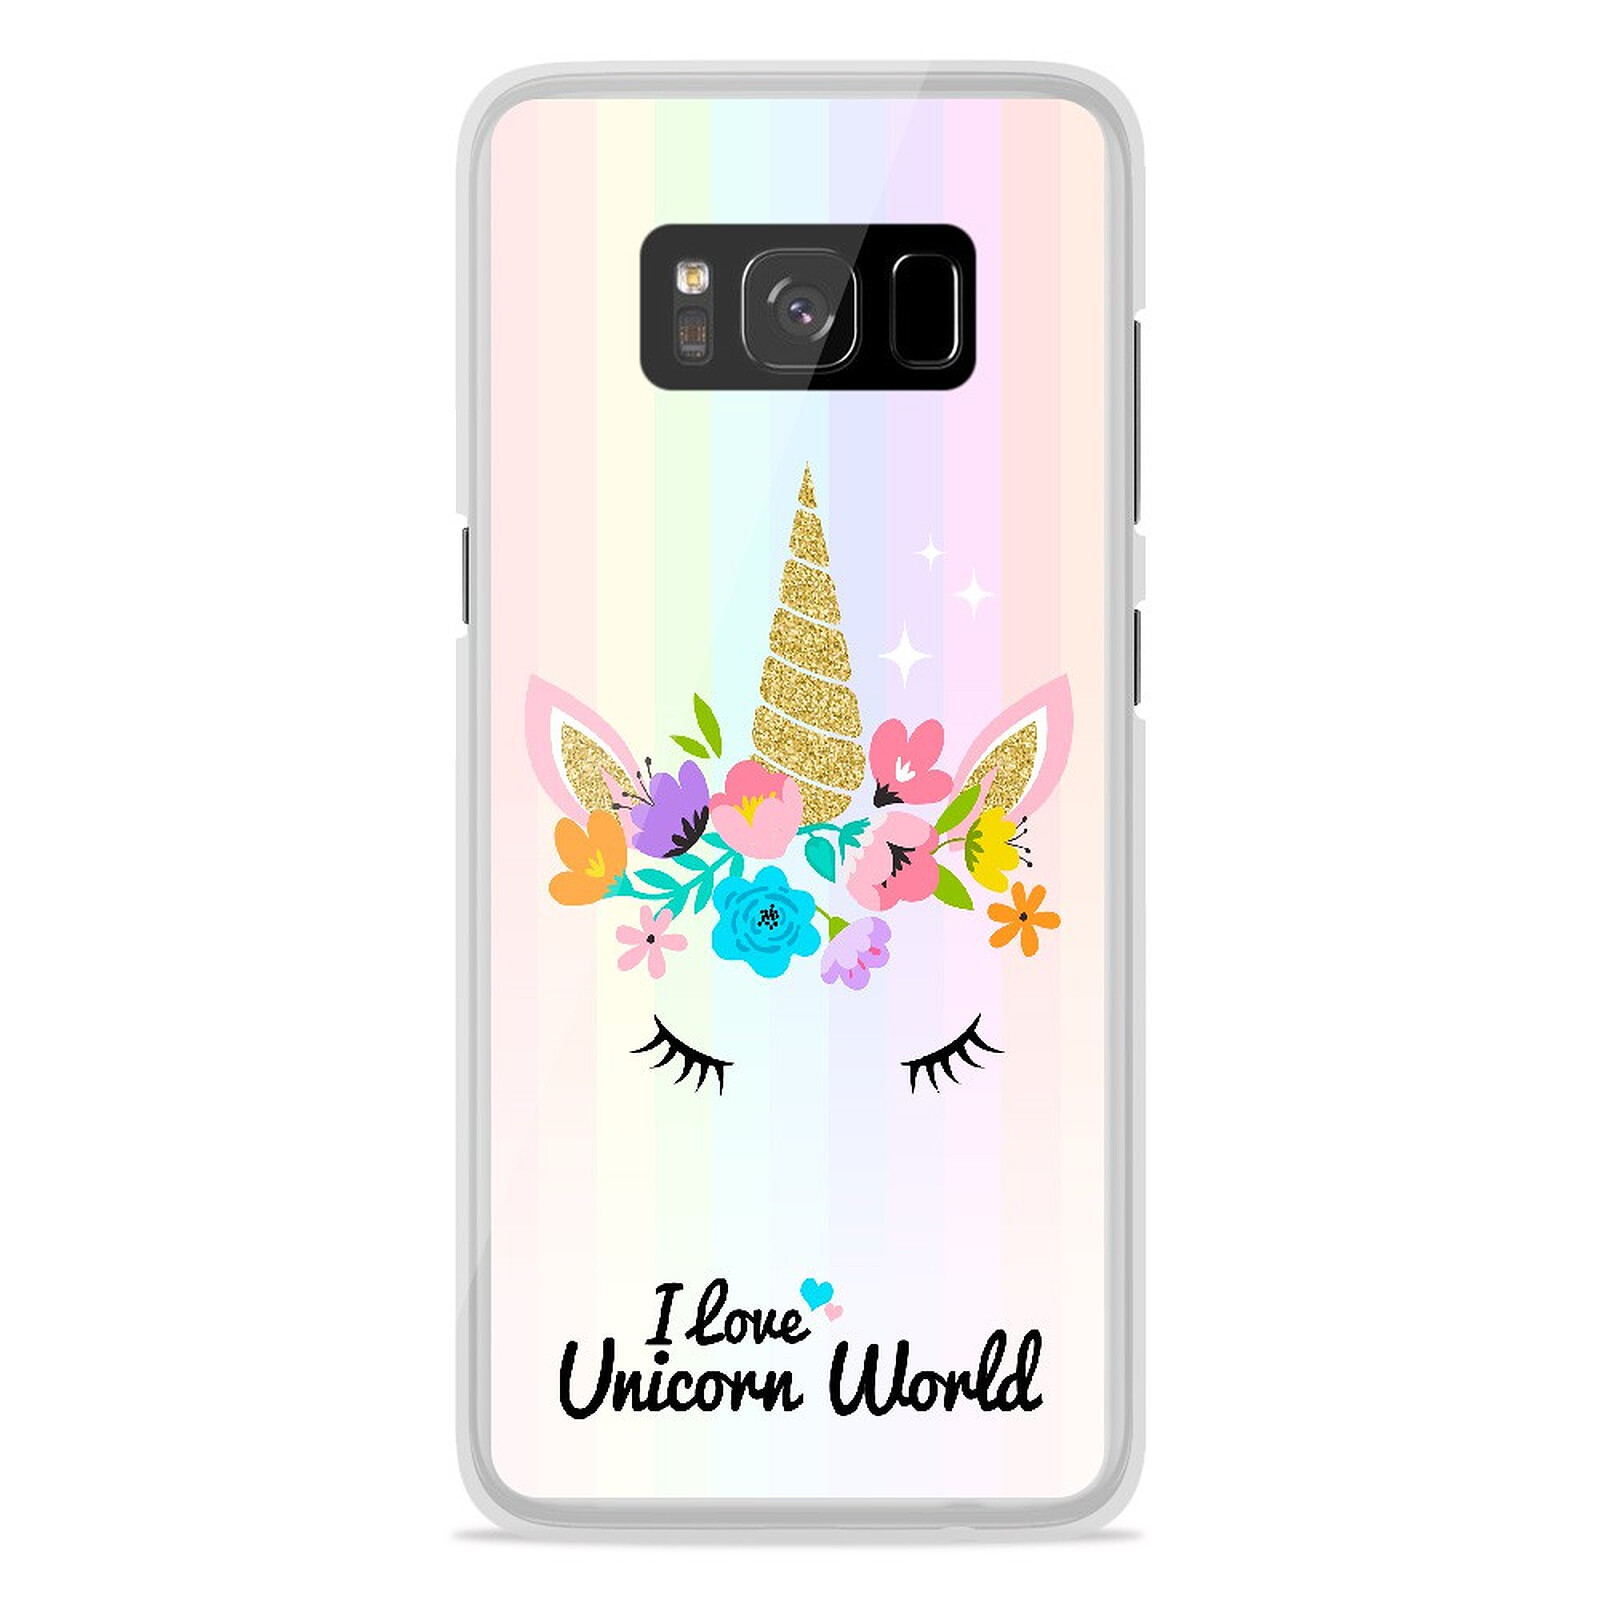 لوحات الطرق في السعودية 1001 Coques Coque silicone gel Samsung Galaxy S8 Plus motif Unicorn World